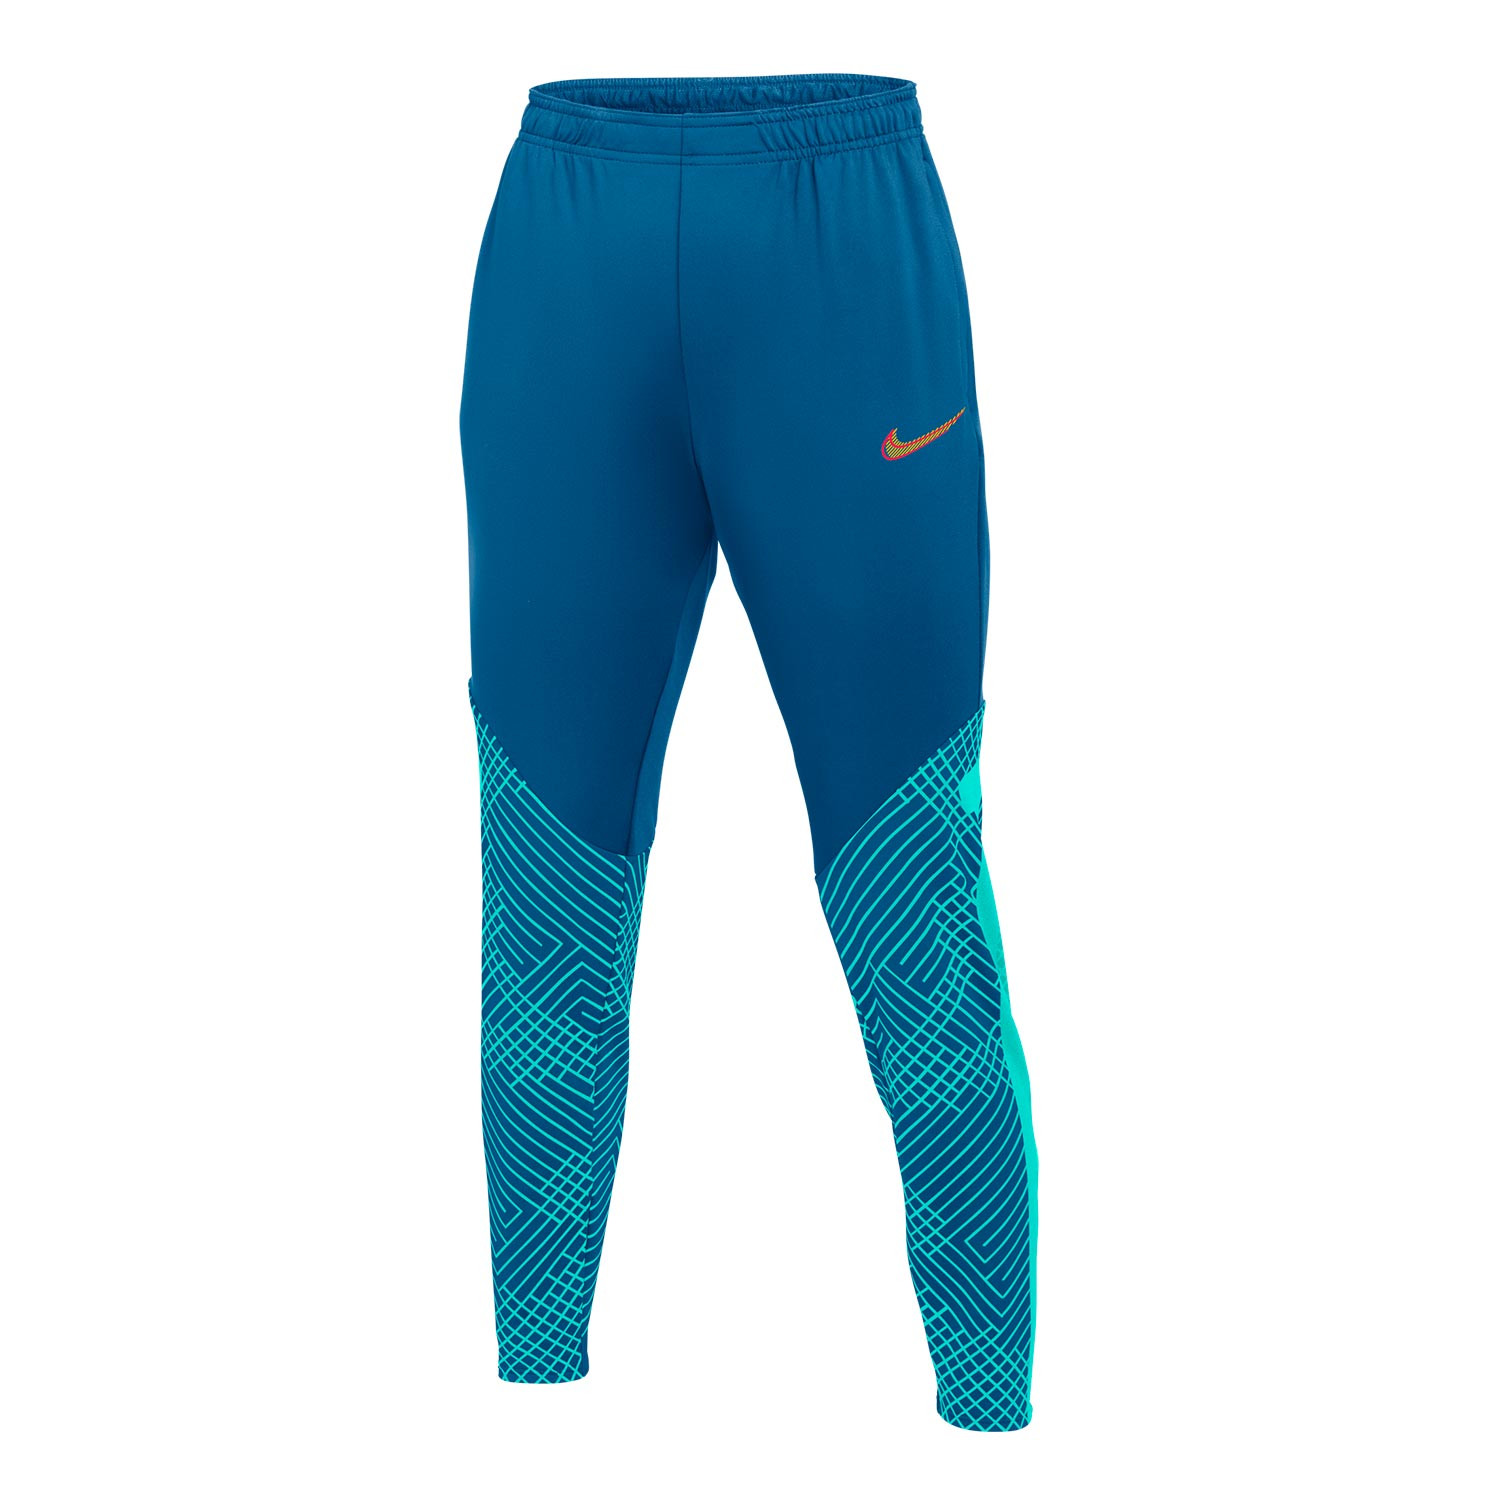 Pantalón Nike mujer Dri-Fit Strike azul cian